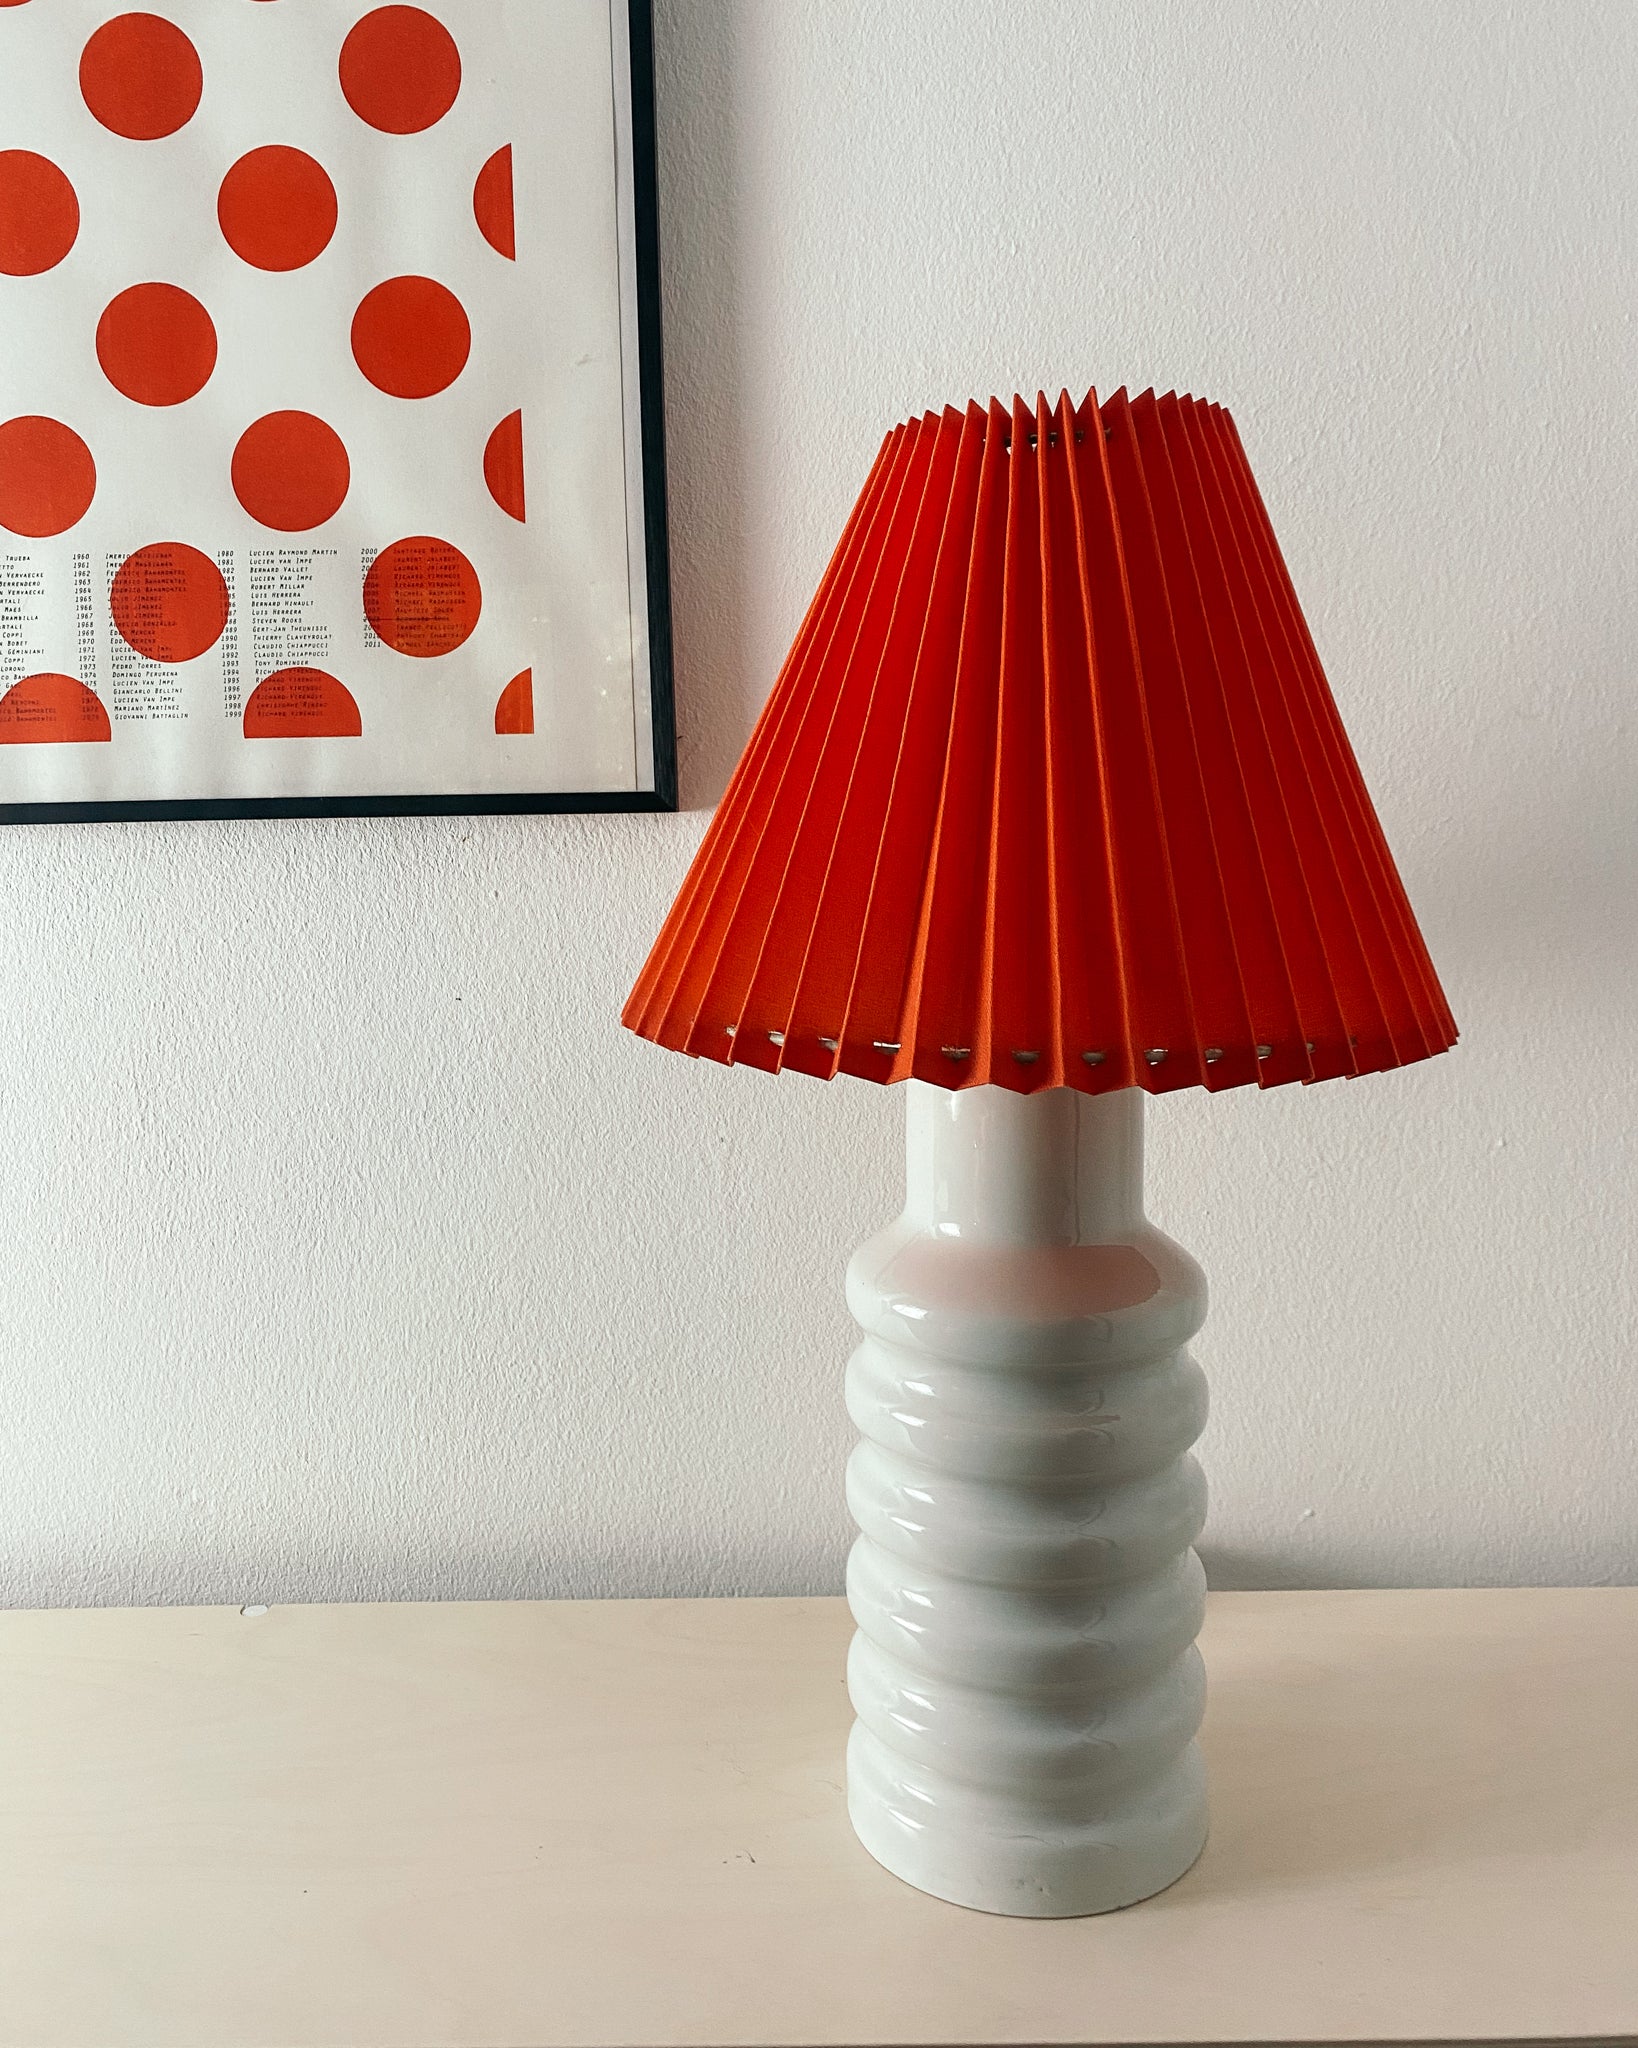 Vintage-Lampe aus Eisen von der FIS